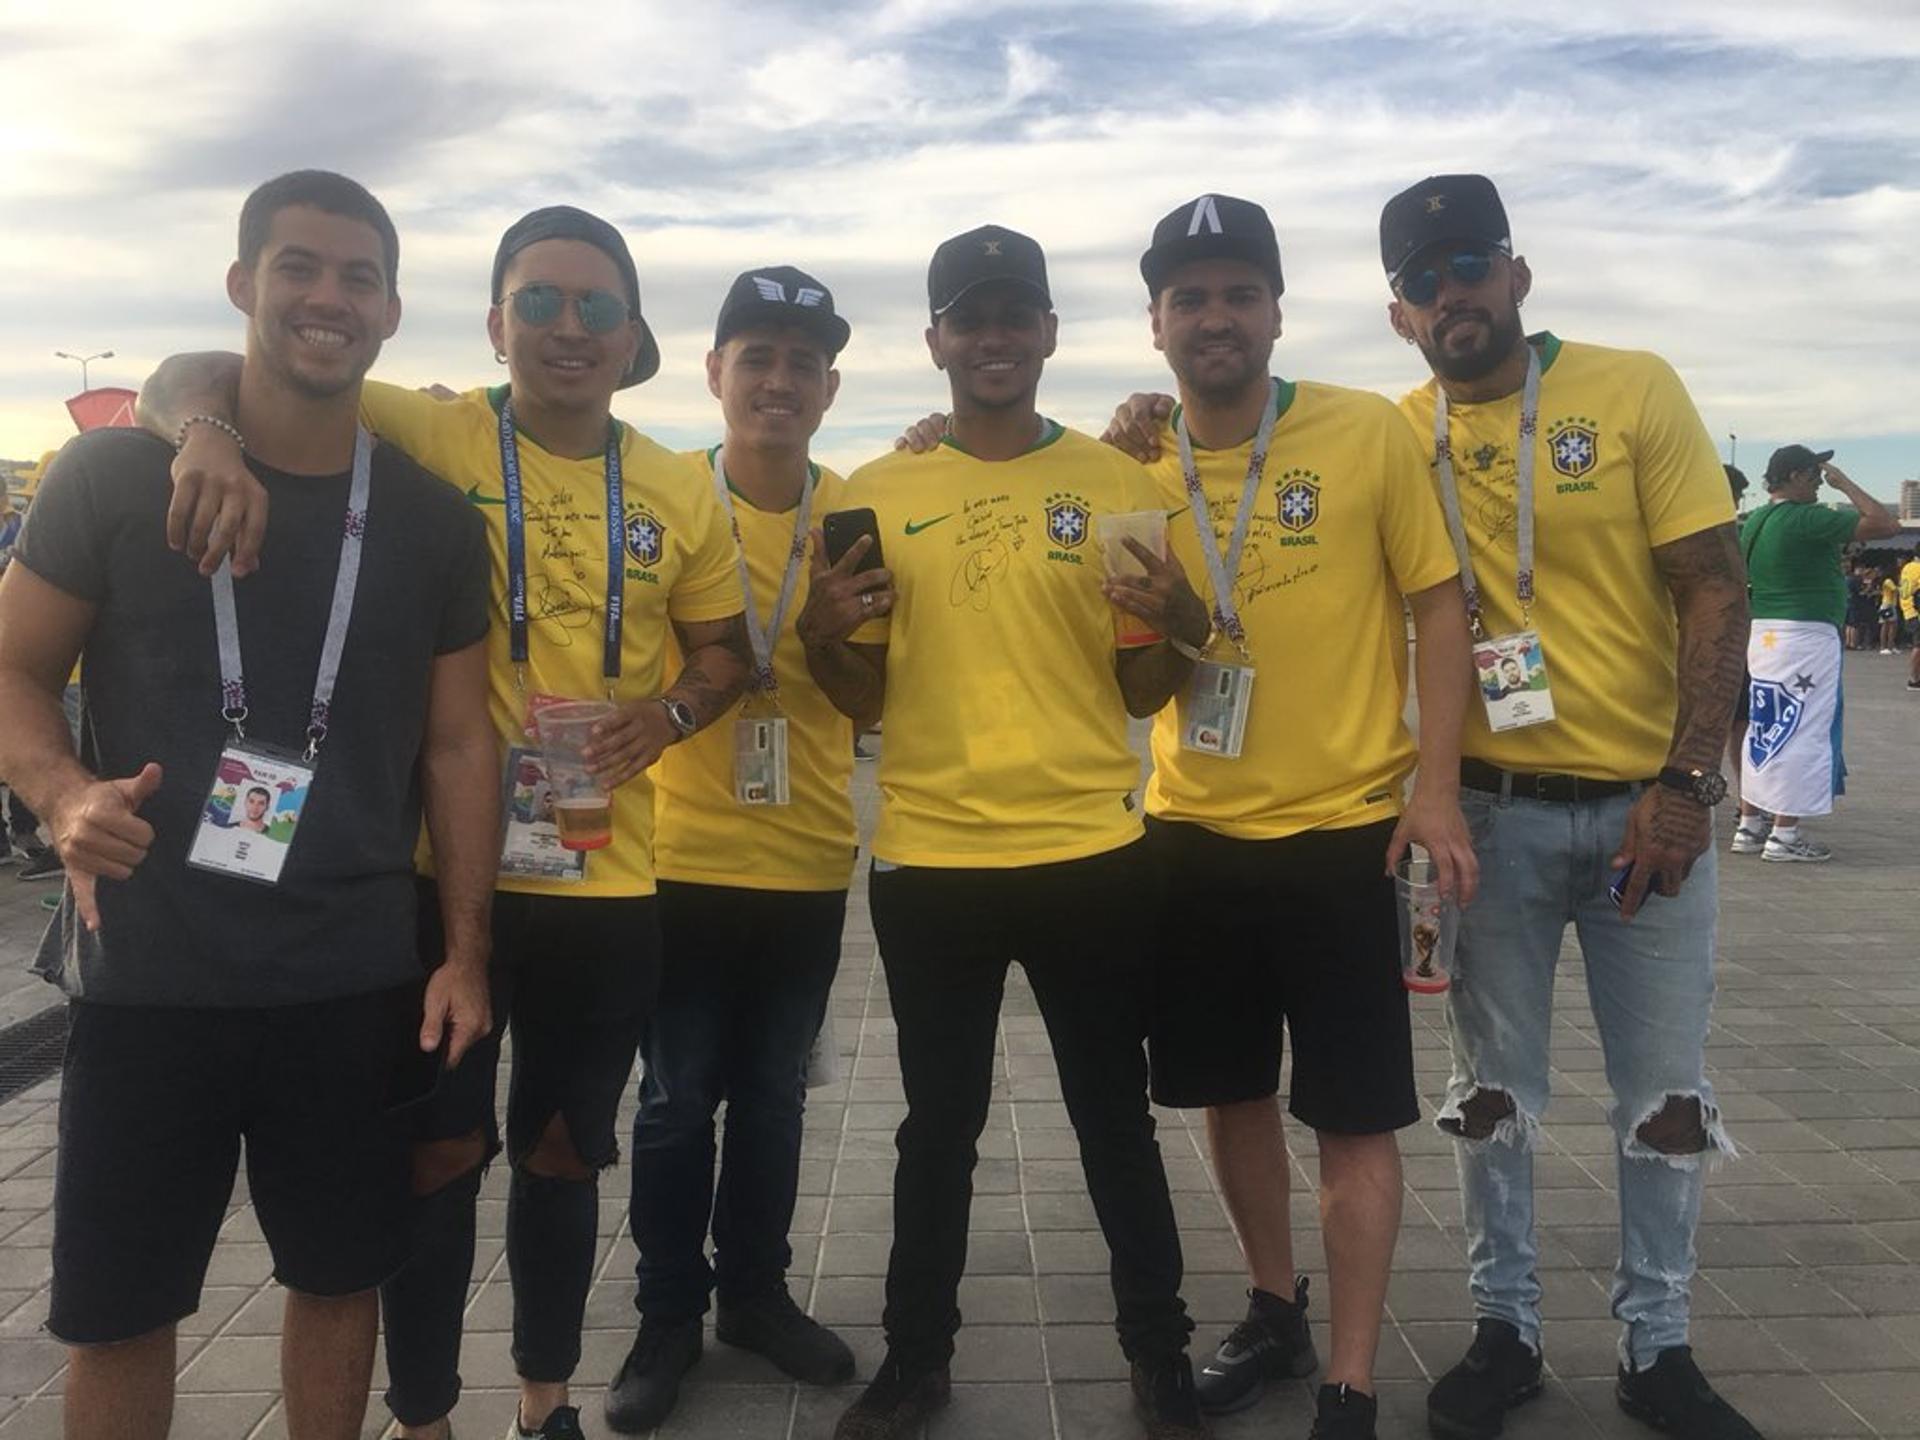 Os famosos 'parças de Neymar' já estão na Arena Rostov para o jogo da Seleção daqui a pouco